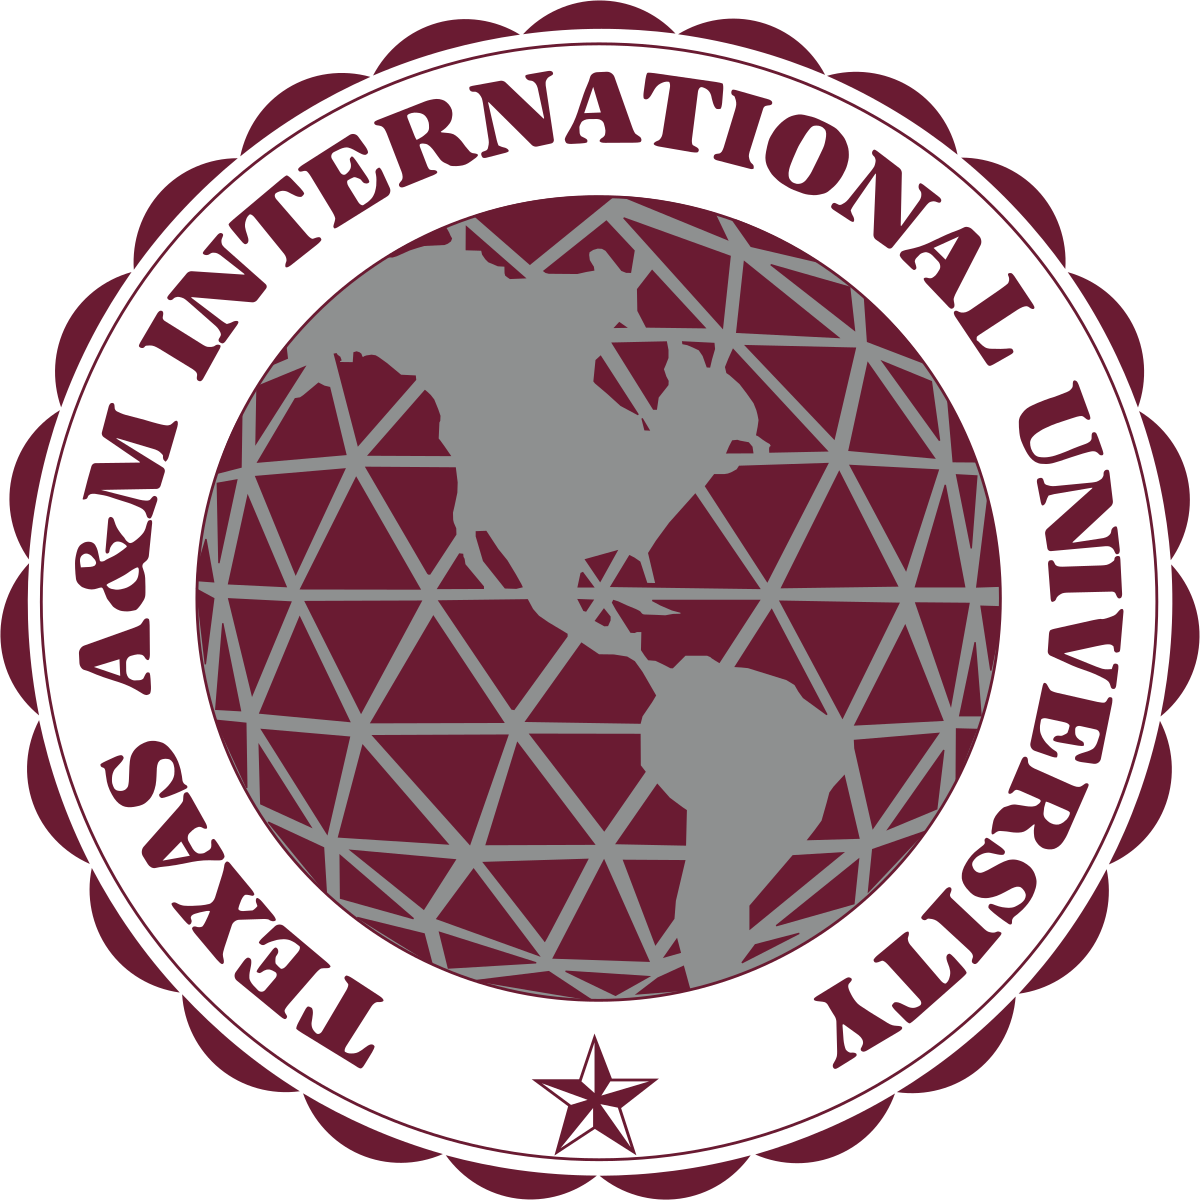 М интернационал. Техасский университет a&m. Международные университет логотип. М International. Texas a&m University logo.